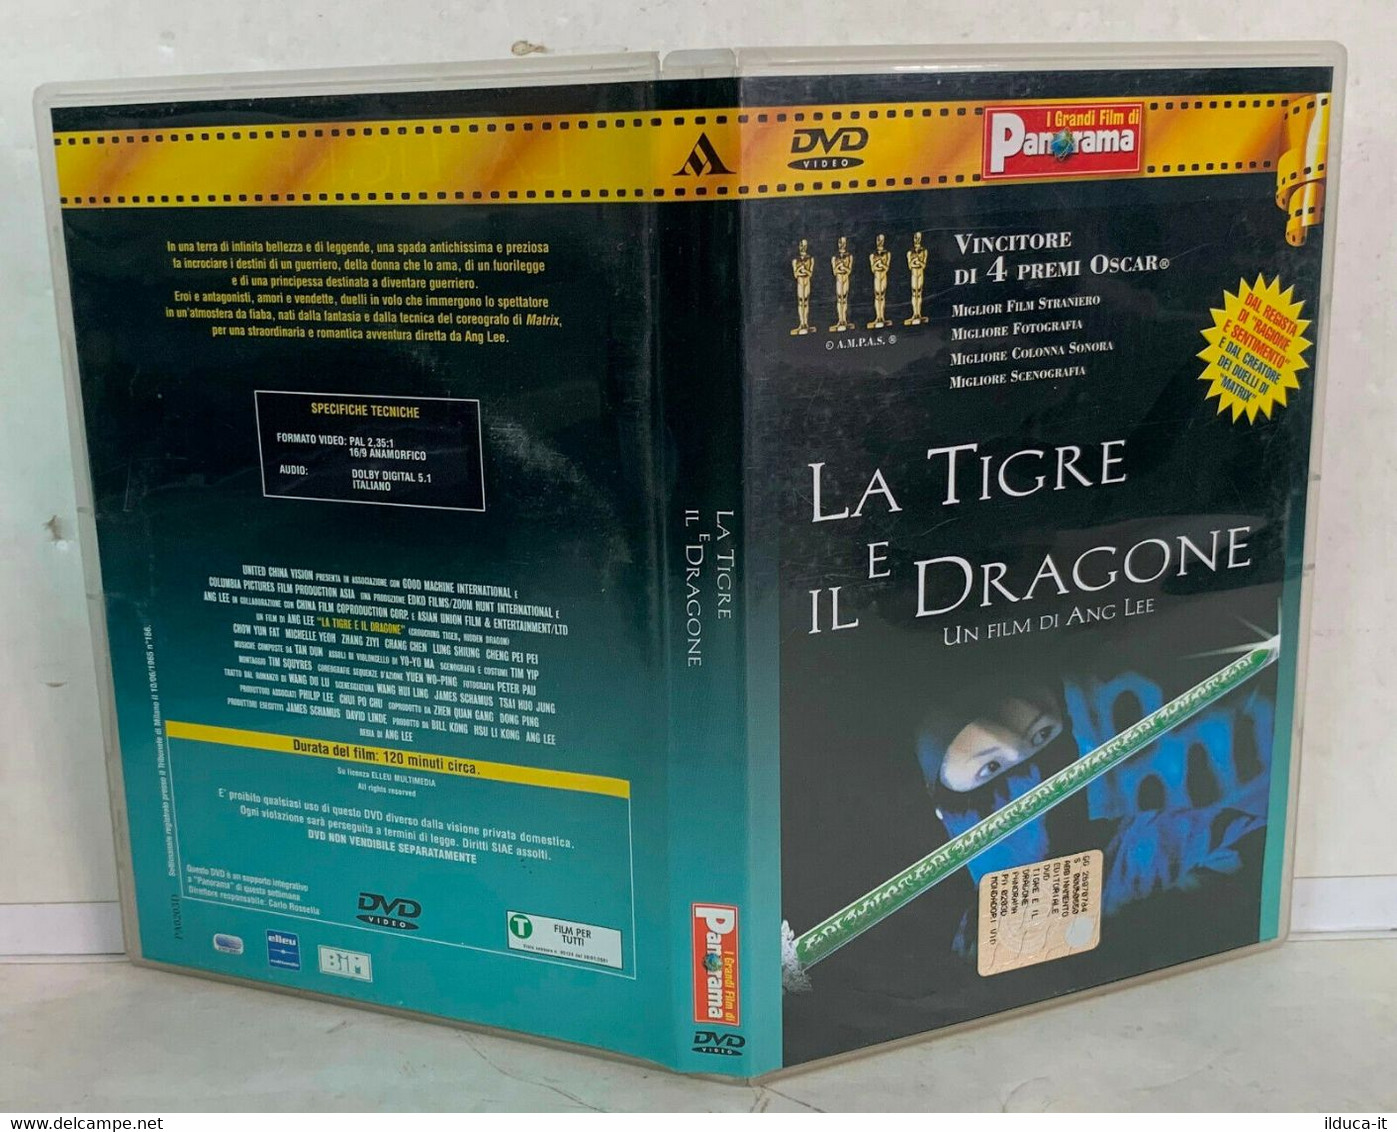 01045 DVD - LA TIGRE E IL DRAGONE (2001) - Ang Lee / Chow Yun-Fat - Histoire